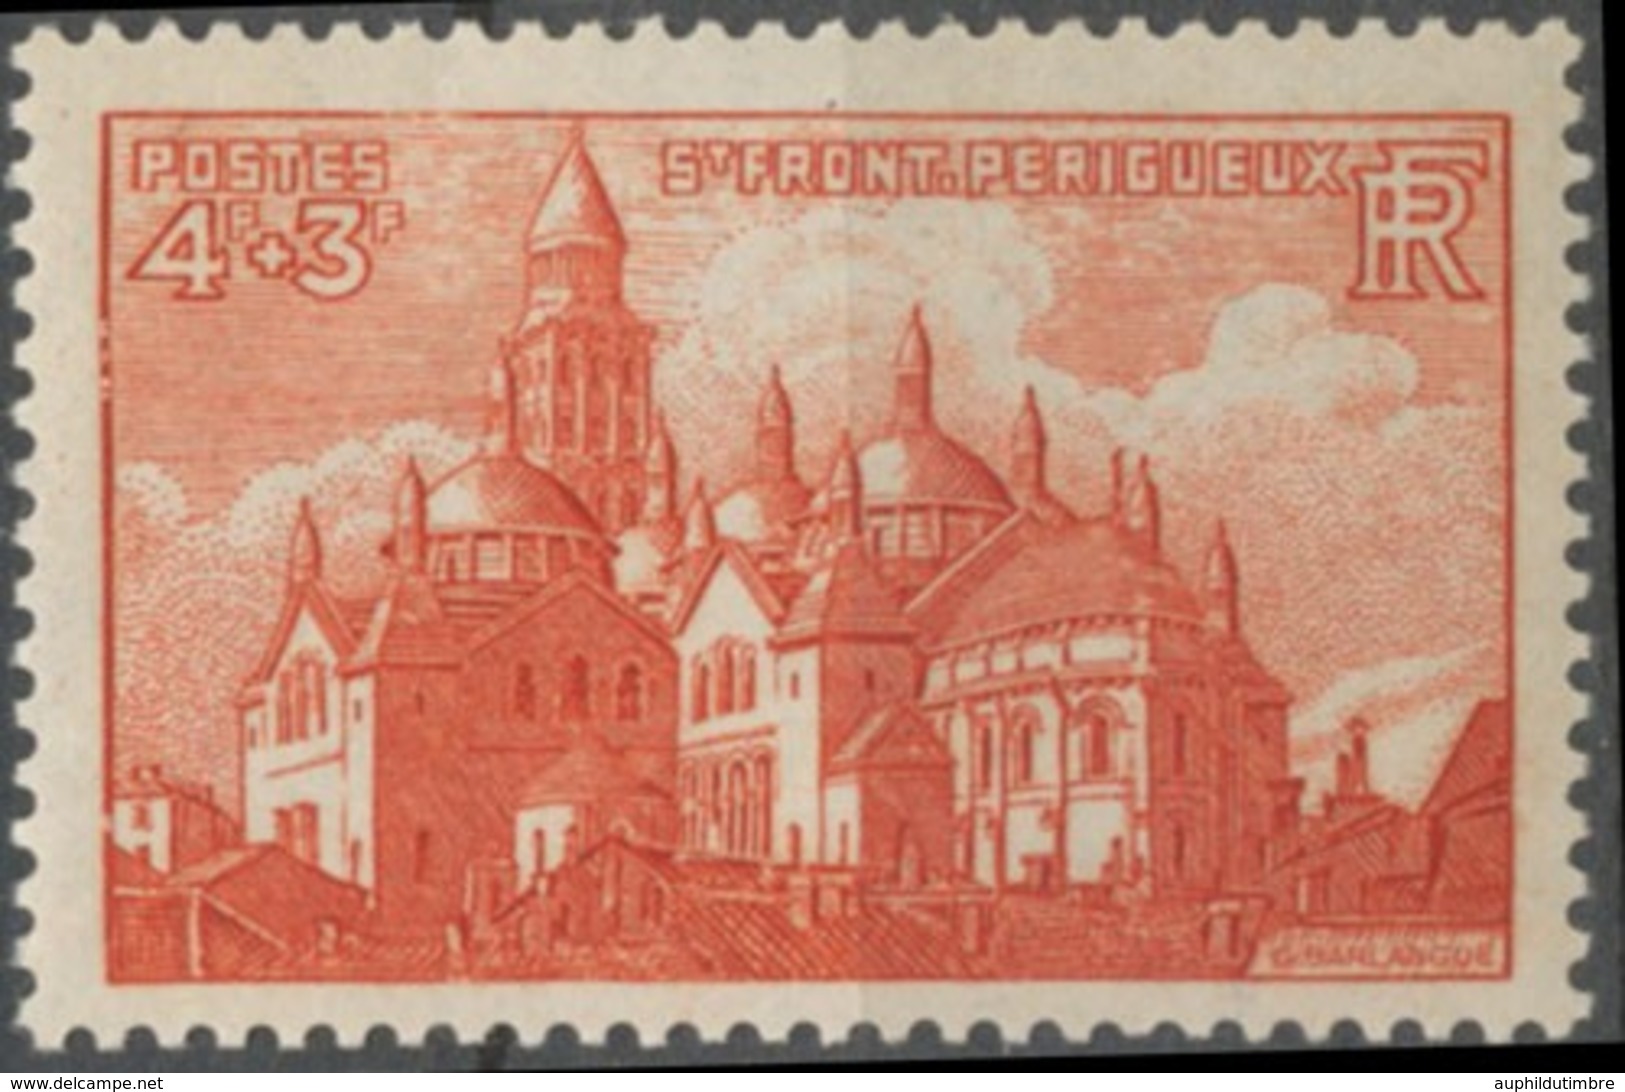 Cathédrales Et Basiliques. Saint-Front, De Périgueux 4f.+3f. Brun-rouge Neuf Luxe ** Y774 - Neufs